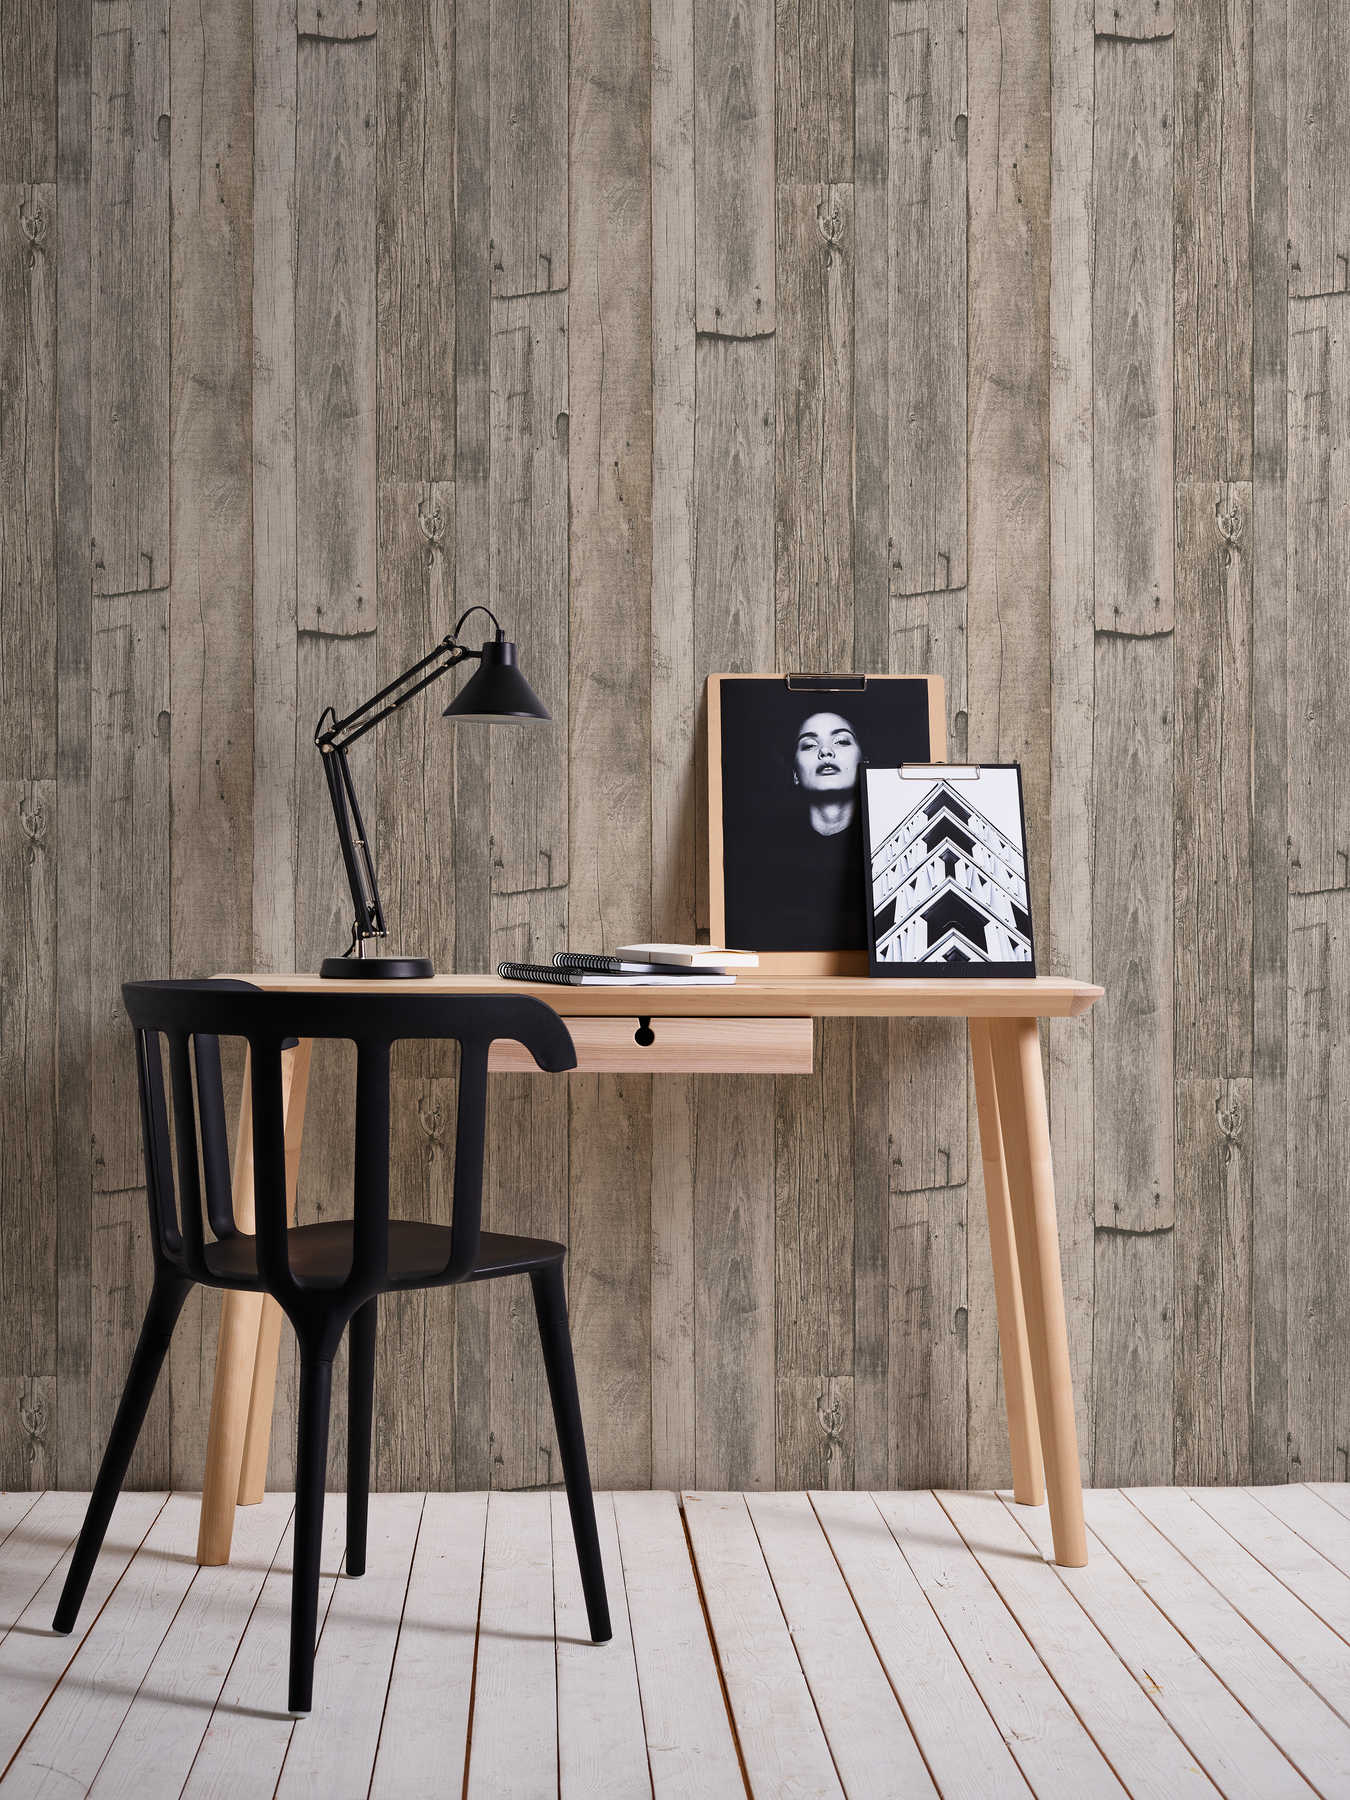             Wooden wallpaper with boards in rustic industrial design - beige, black, cream
        